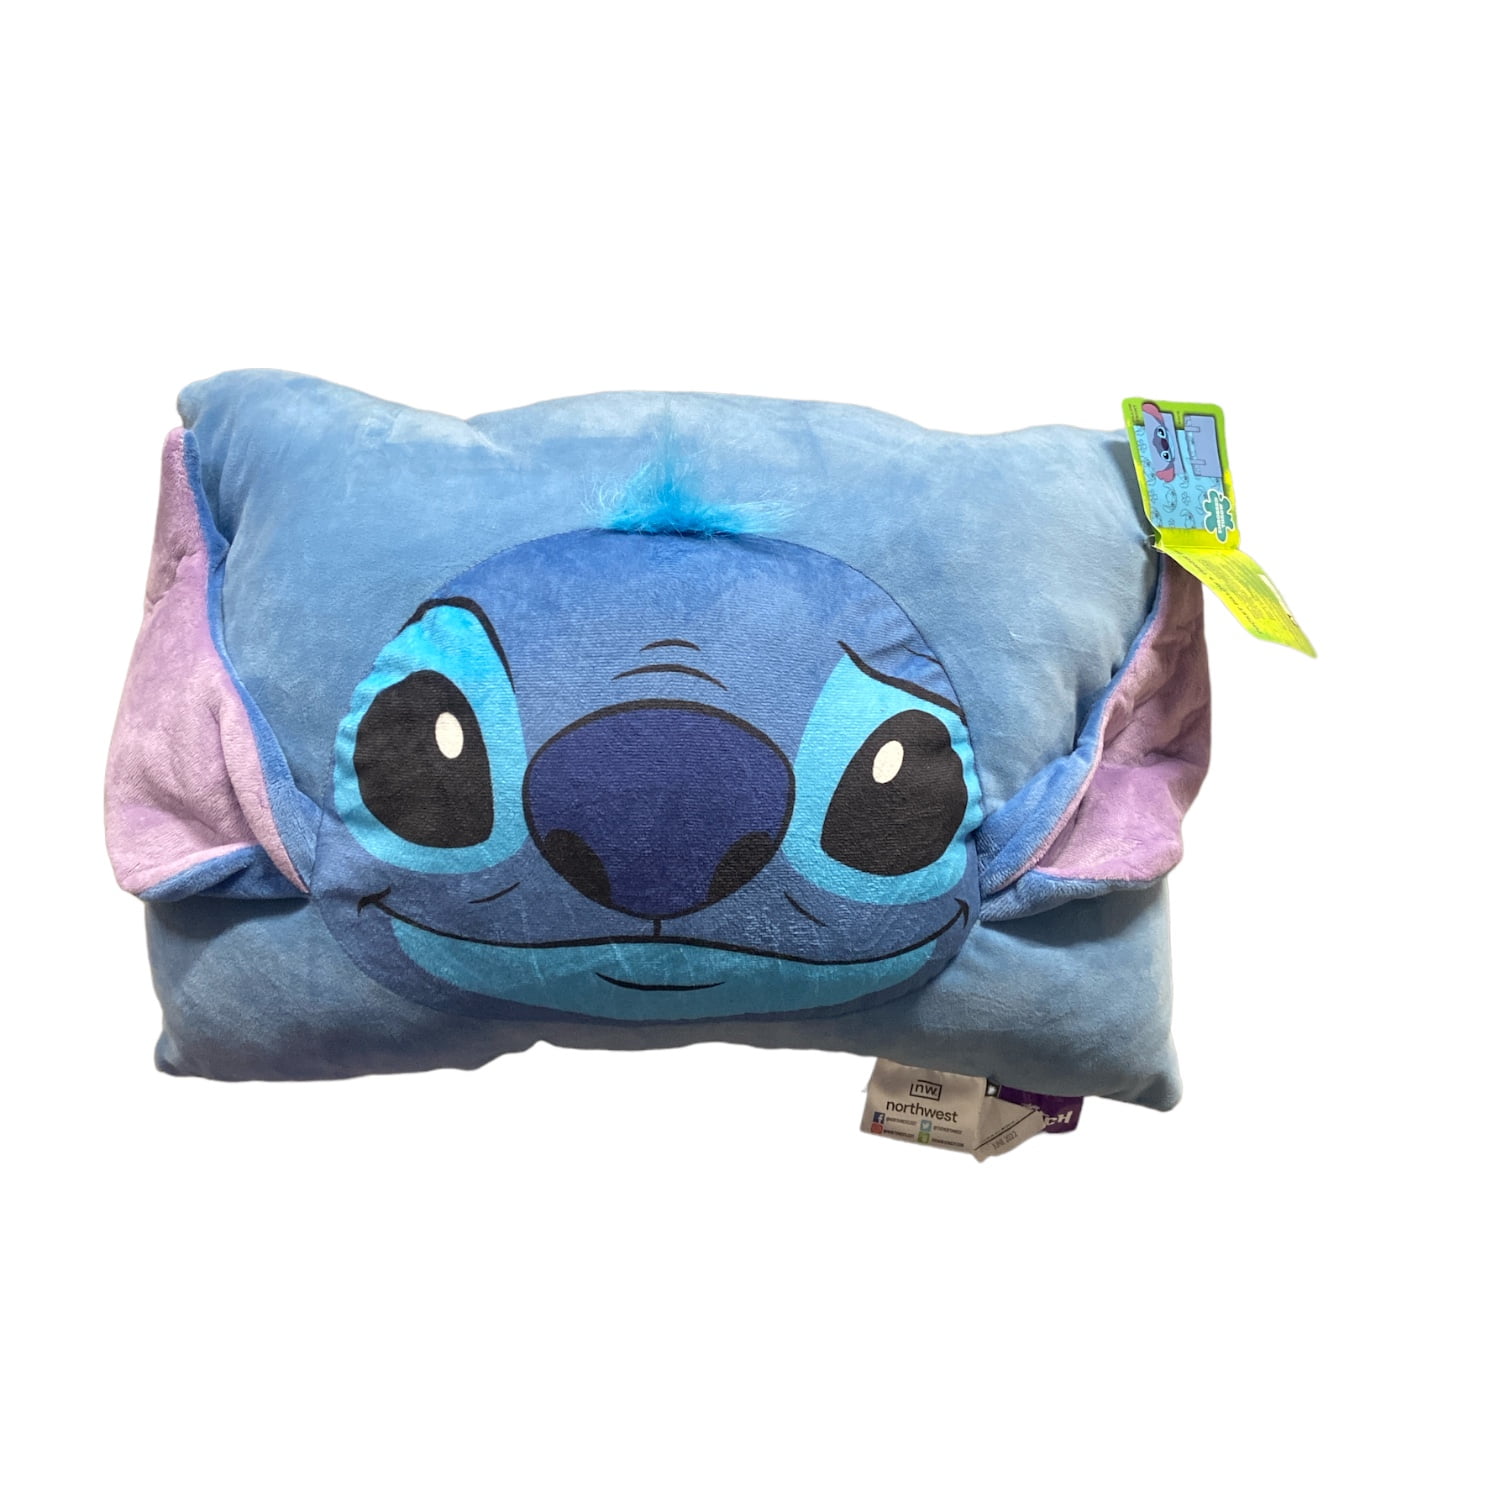 Plush Stitch Disney, Plush Sleeping Toys, Plush Throw Pillow